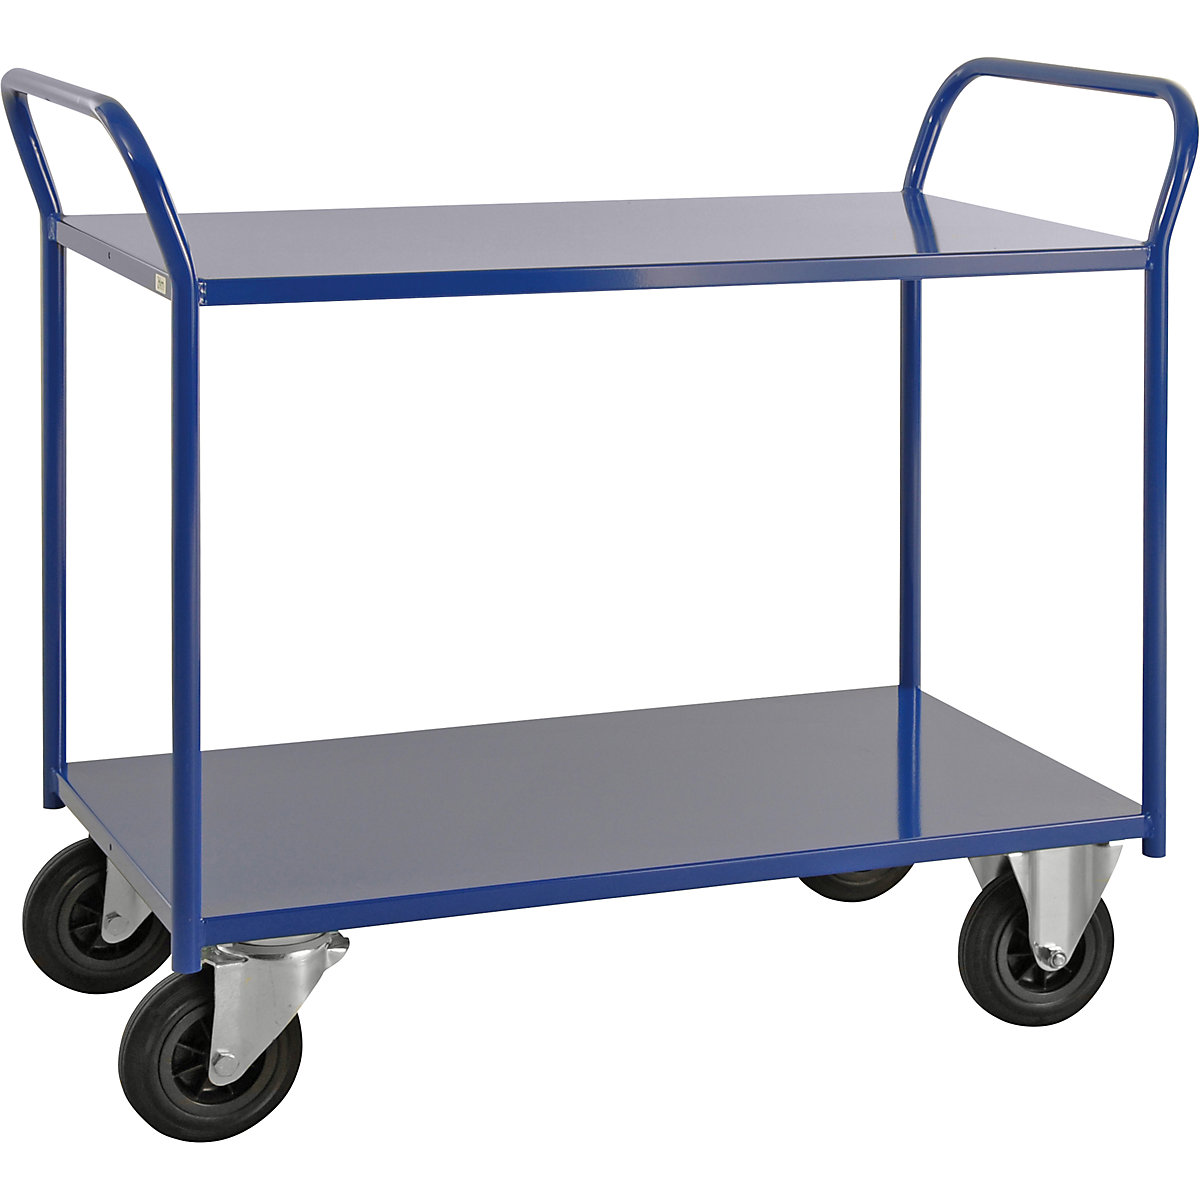 Stolový vozík KM41 – Kongamek, 2 poschodia, d x š x v 1080 x 450 x 975 mm, modrá, 2 otočné a 2 pevné kolieska, od 5 ks-1